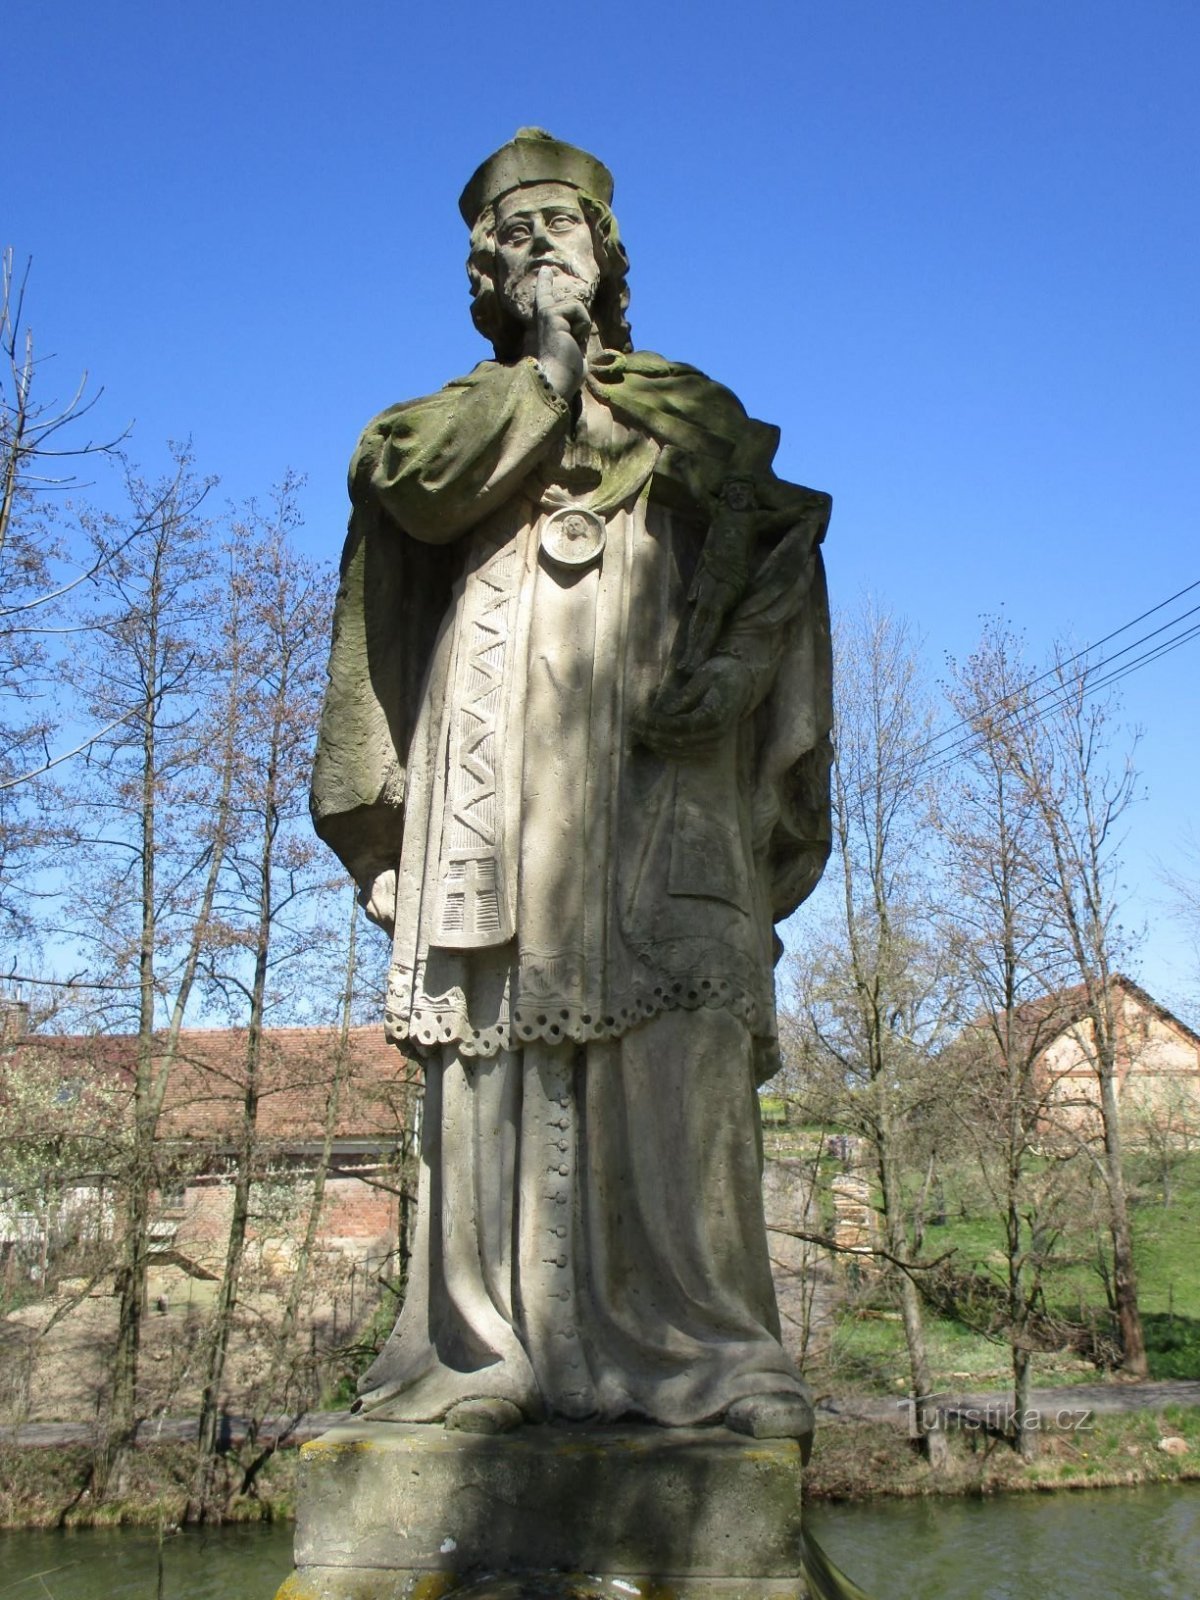 Staty av St. John of Nepomuck (Vilantice, 20.4.2020 april XNUMX)